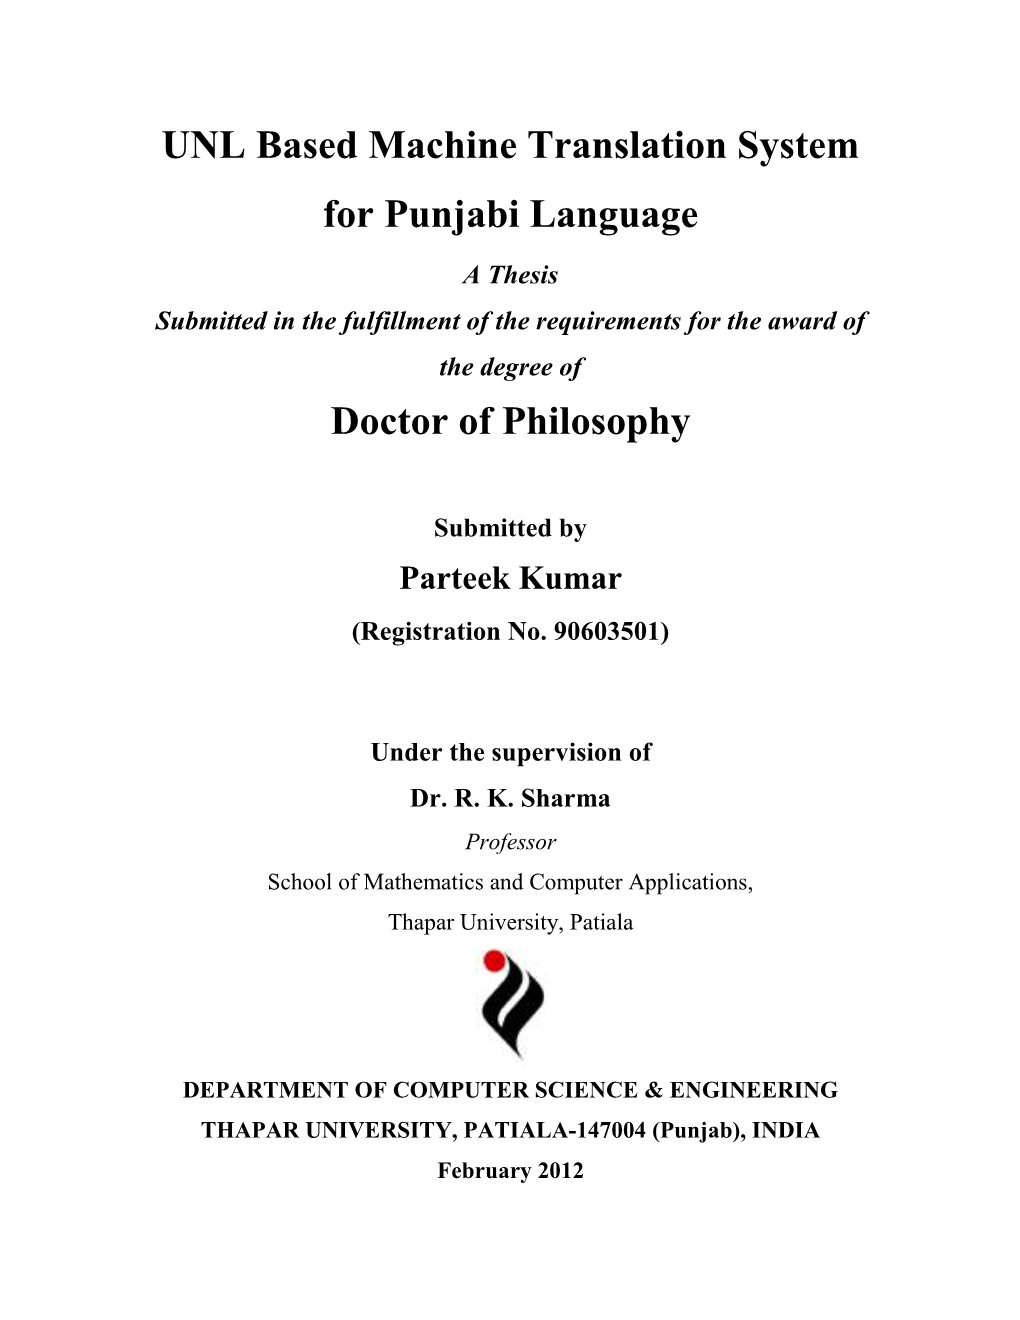 UNL Based Machine Translation System for Punjabi Language